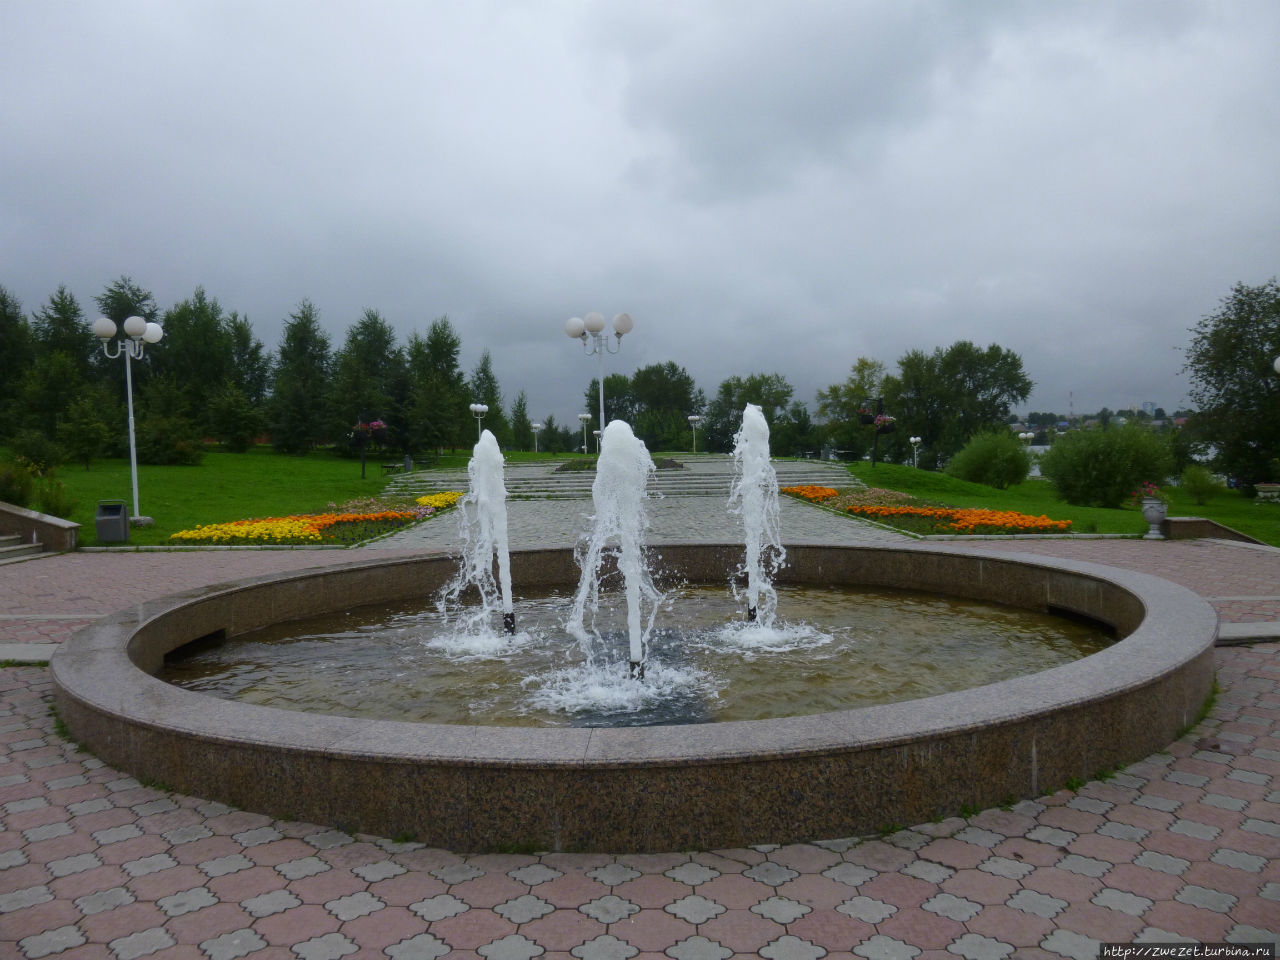 Нижний Тагил — столица Демидовской империи Нижний Тагил, Россия